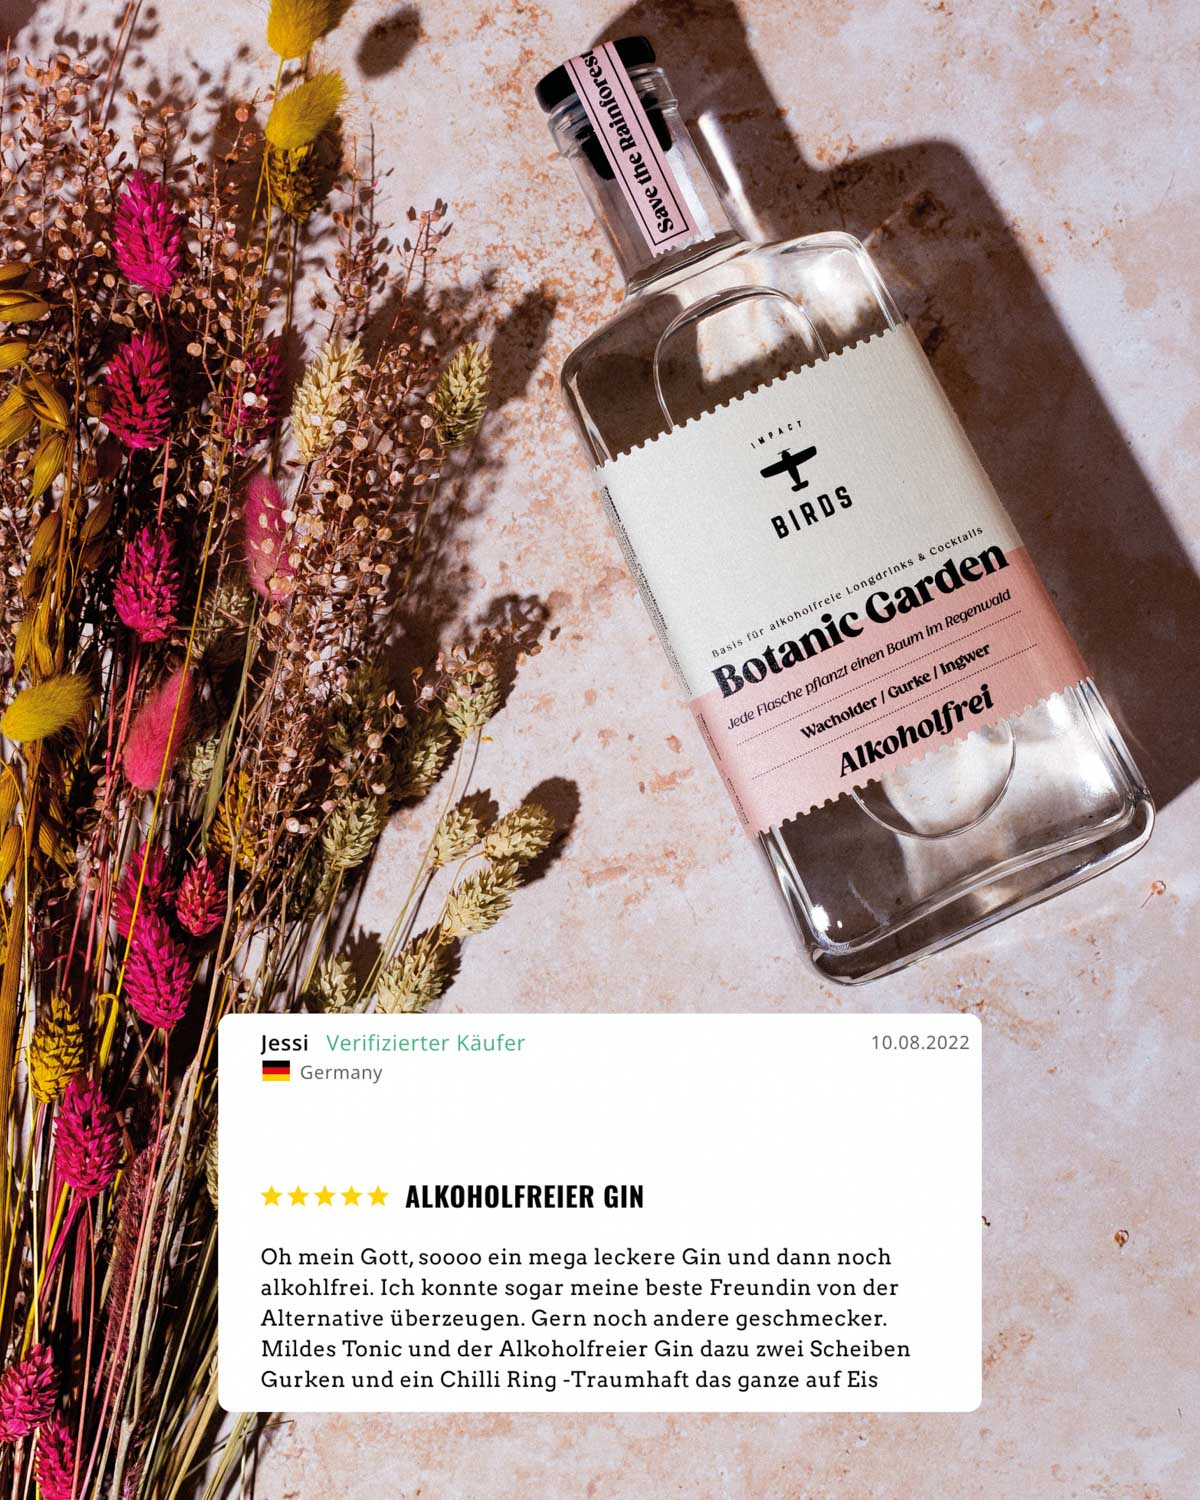 Der Botanic Garden, unser alkoholfreier Gin, erhält eine hervorragende Bewertung von fünf Sternen. Ein verifizierter Käufer schwärmt begeistert: "Ich bin absolut begeistert von diesem Gin, er schmeckt einfach fantastisch. Das Beste daran ist, dass er alkoholfrei ist."